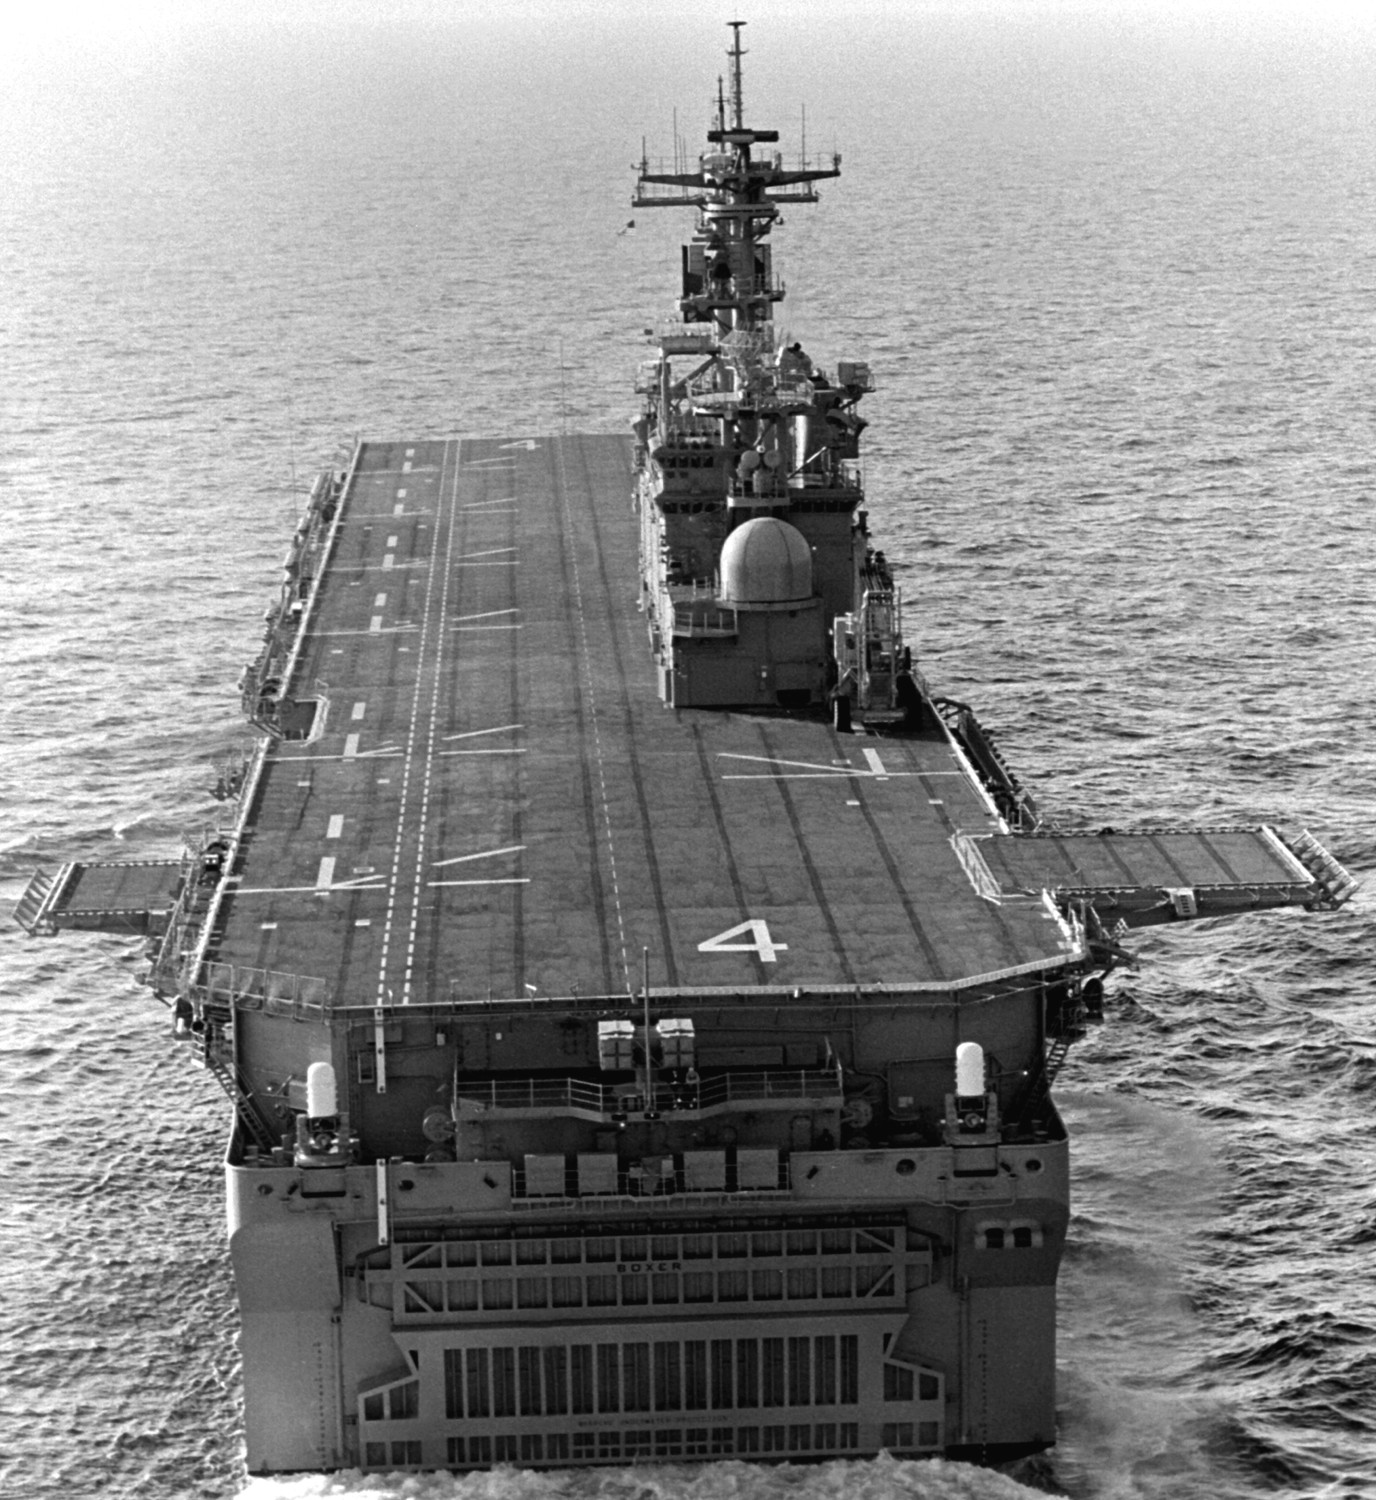 lhd-4 uss boxer wasp class amphibious assault ship dock landing us navy 06